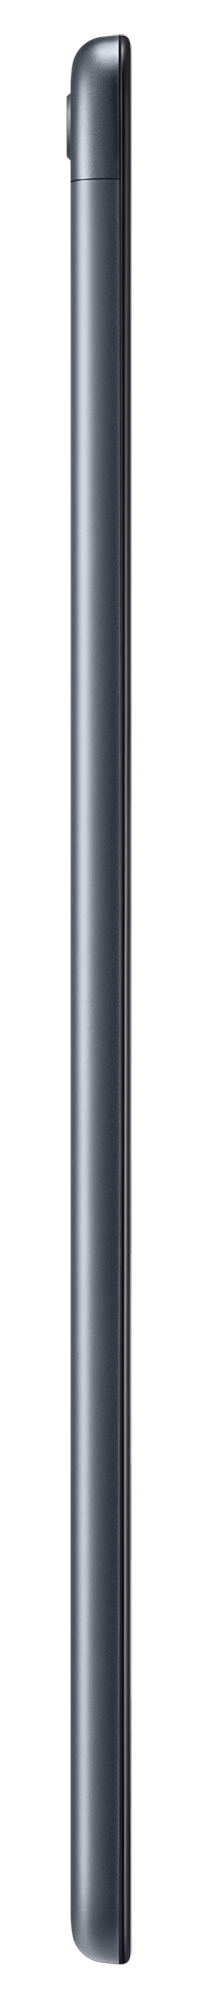 Samsung Galaxy Tab A 10.1-inch 32GB Wi-Fi Tablet - Black